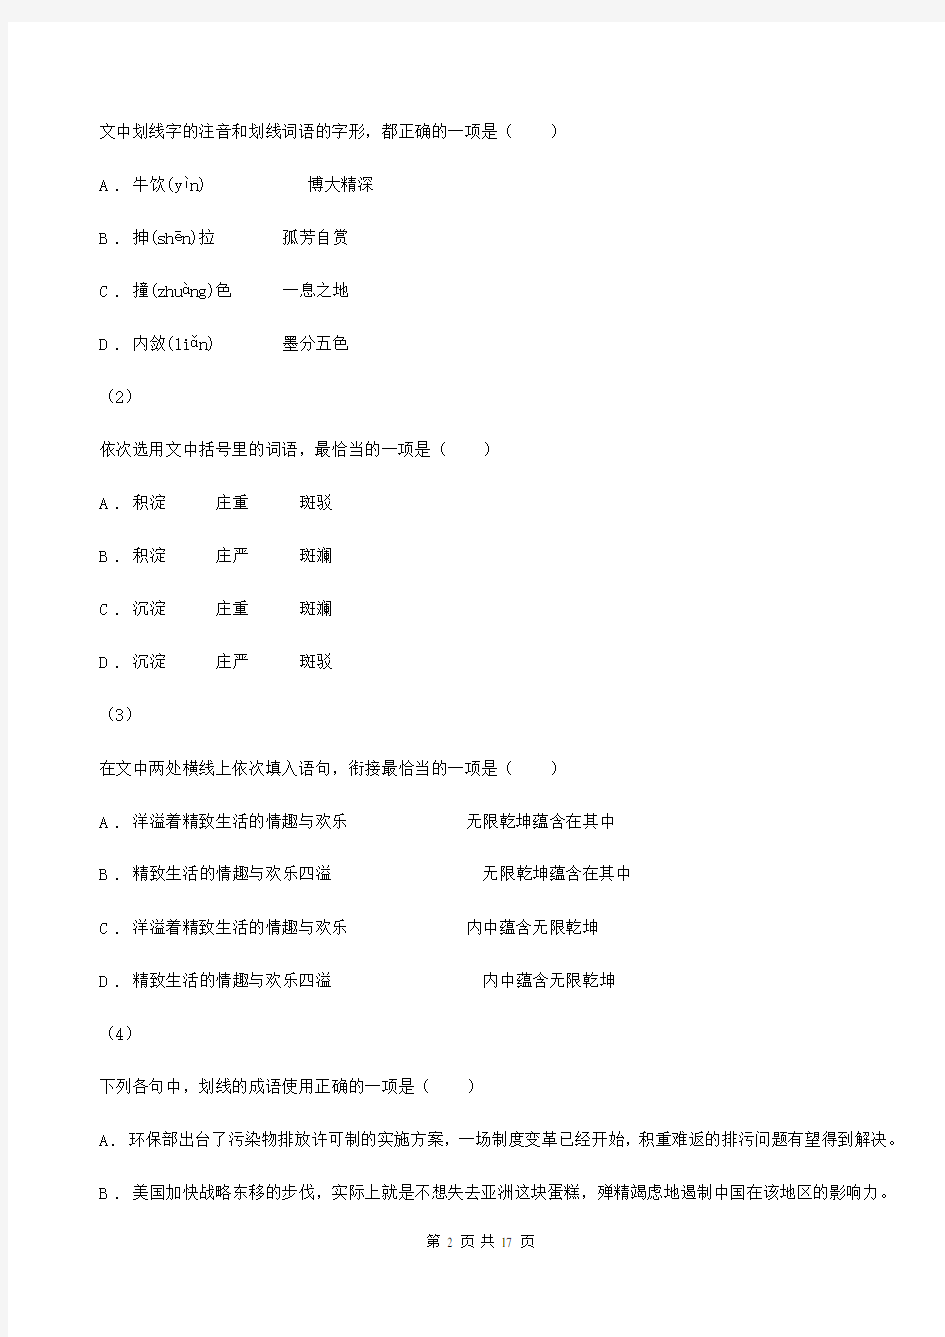 西藏昌都市高三语文适应性考试试卷